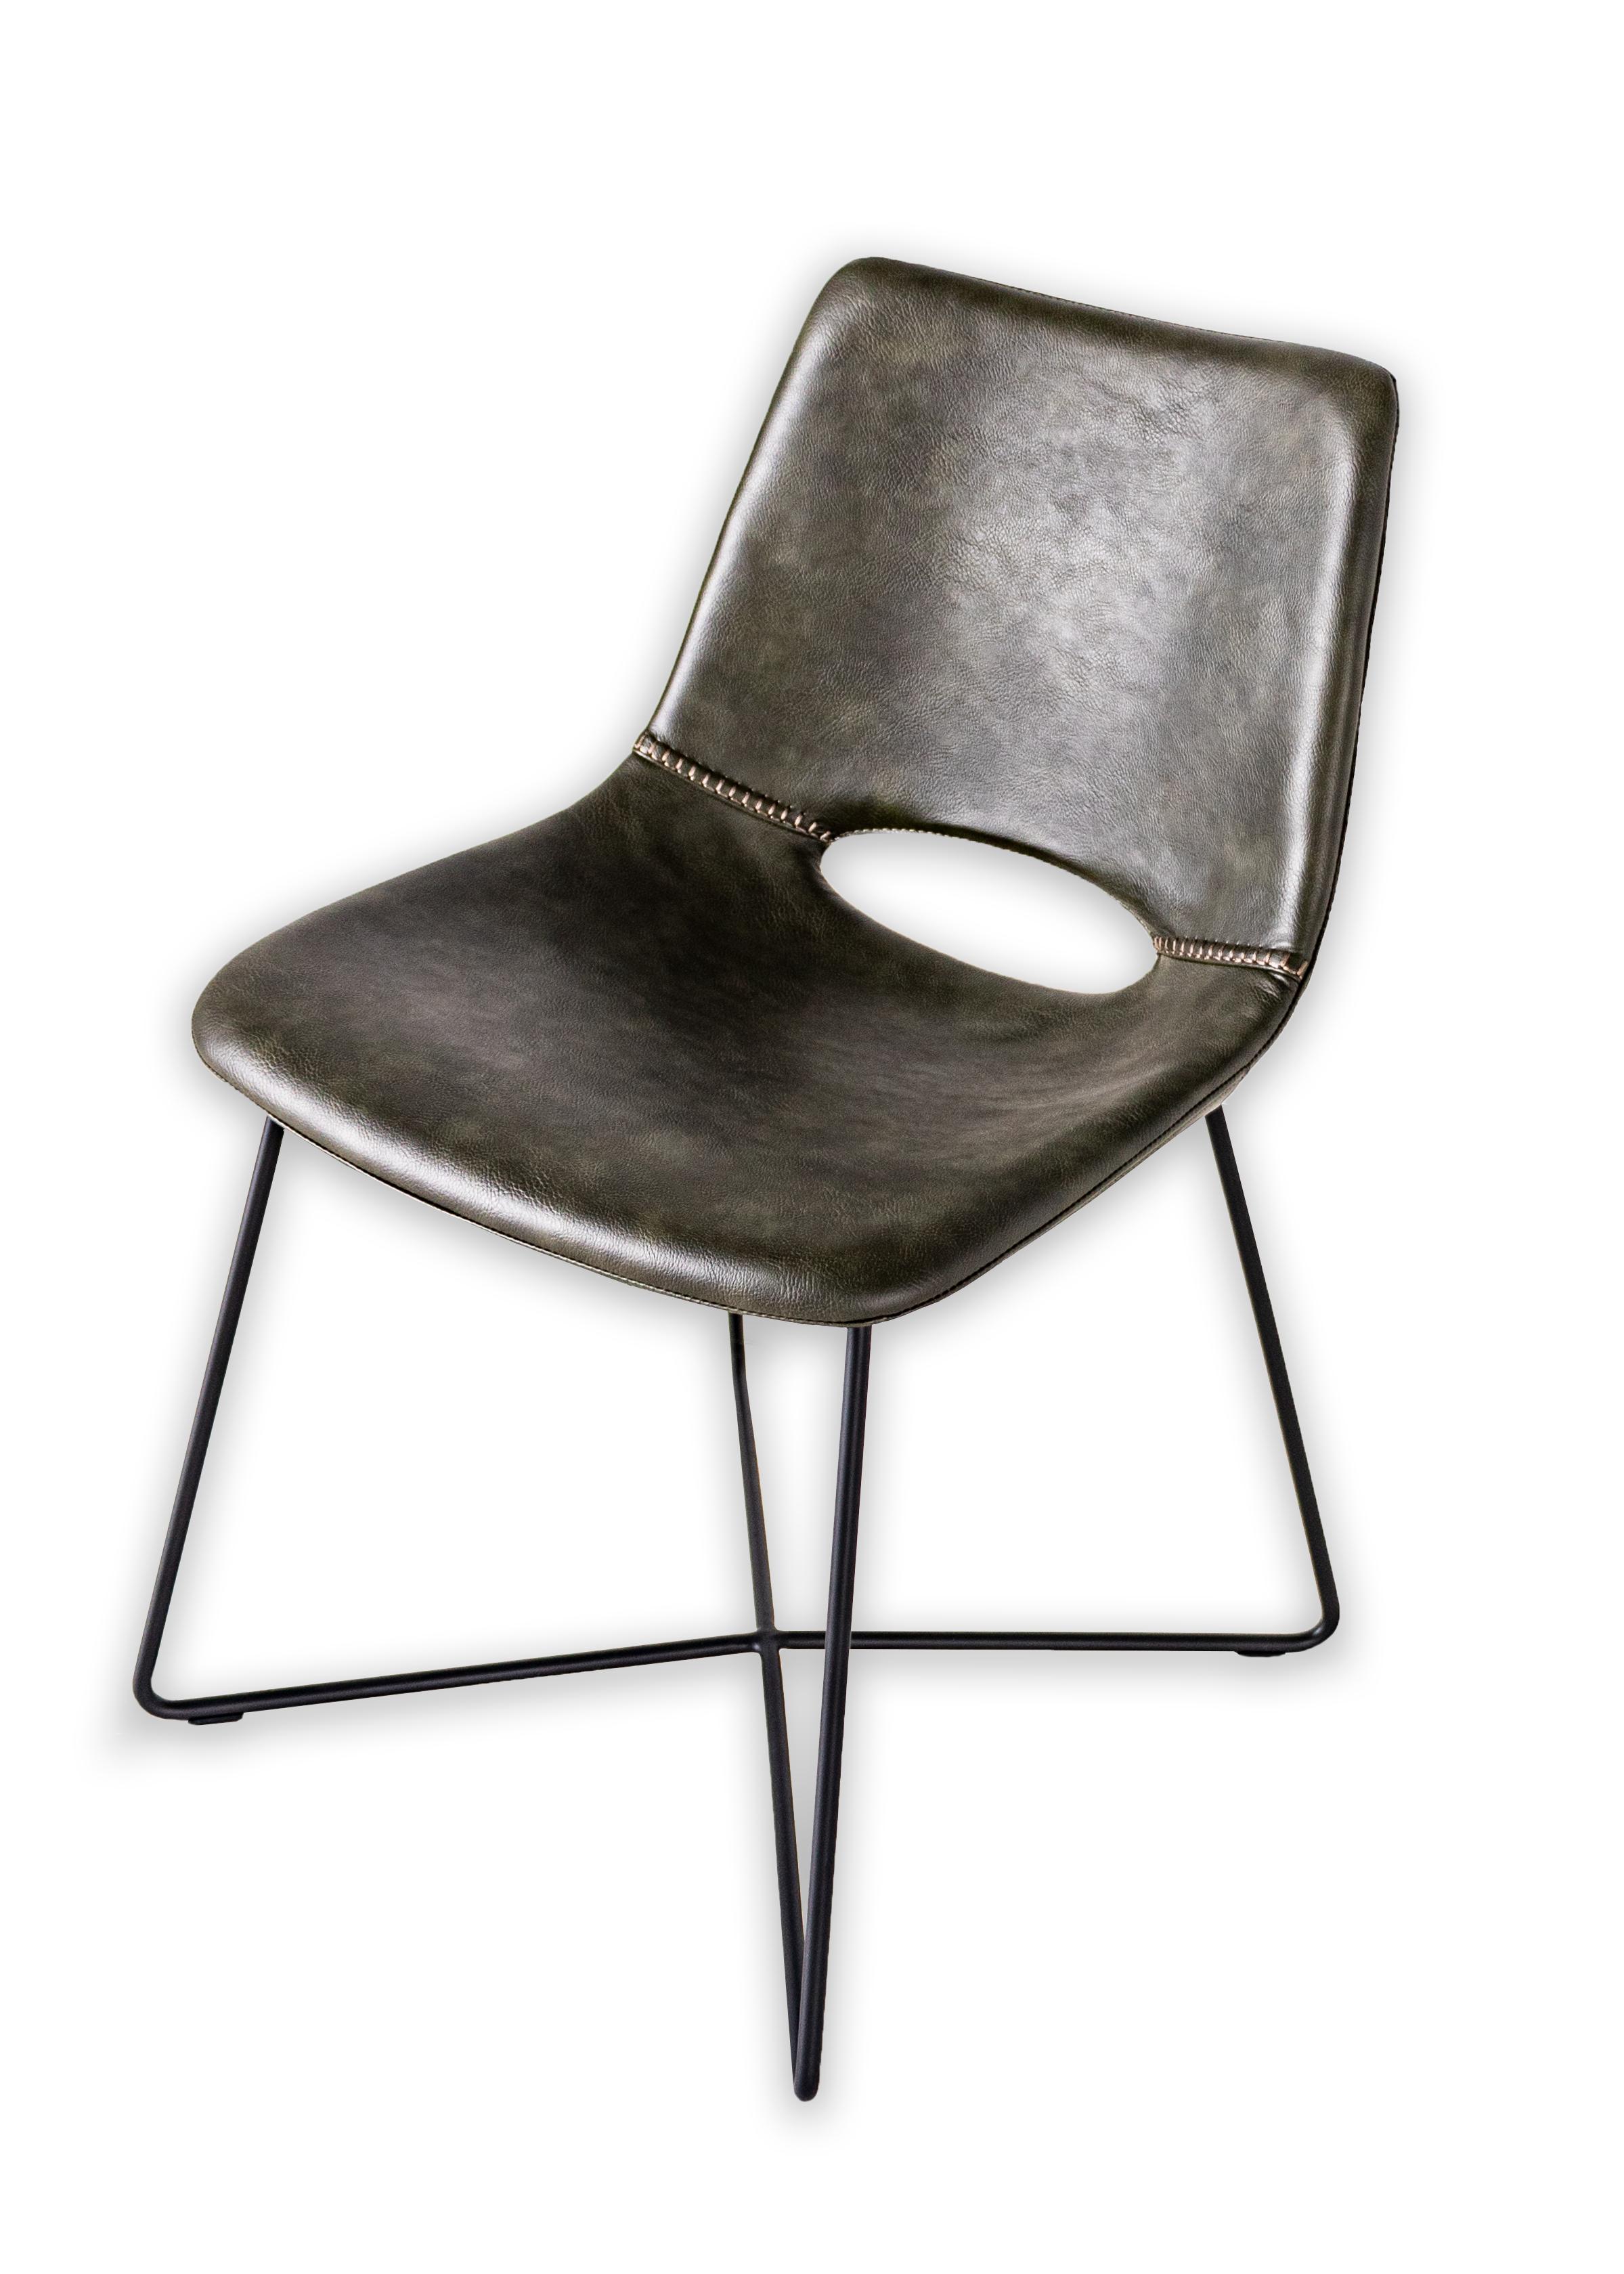 Moderner Esszimmerstuhl aus Leder mit schwarzen Stahlbeinen.

Dieses Stück ist Teil von Brendan Bass' einzigartiger Kollektion Le Monde. Die Kollektion Le Monde, französisch für 